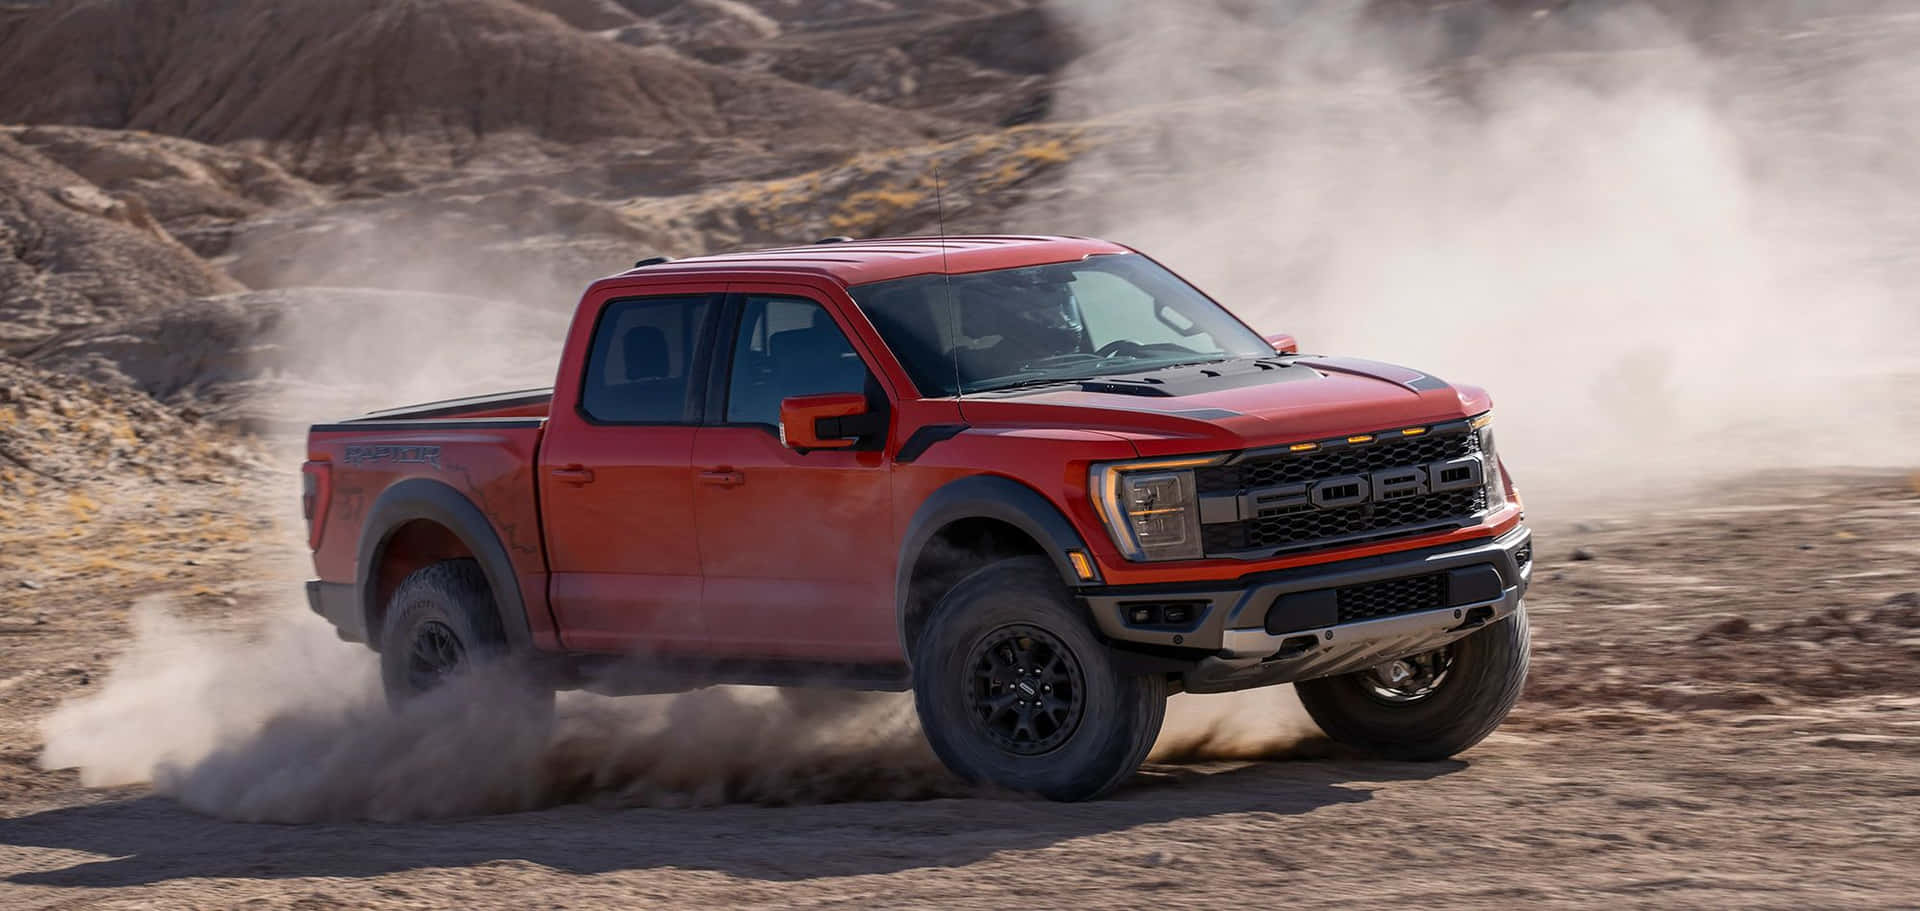 Overmelho 2019 Ford F-150 Rambo Está Dirigindo Pelo Deserto. Papel de Parede